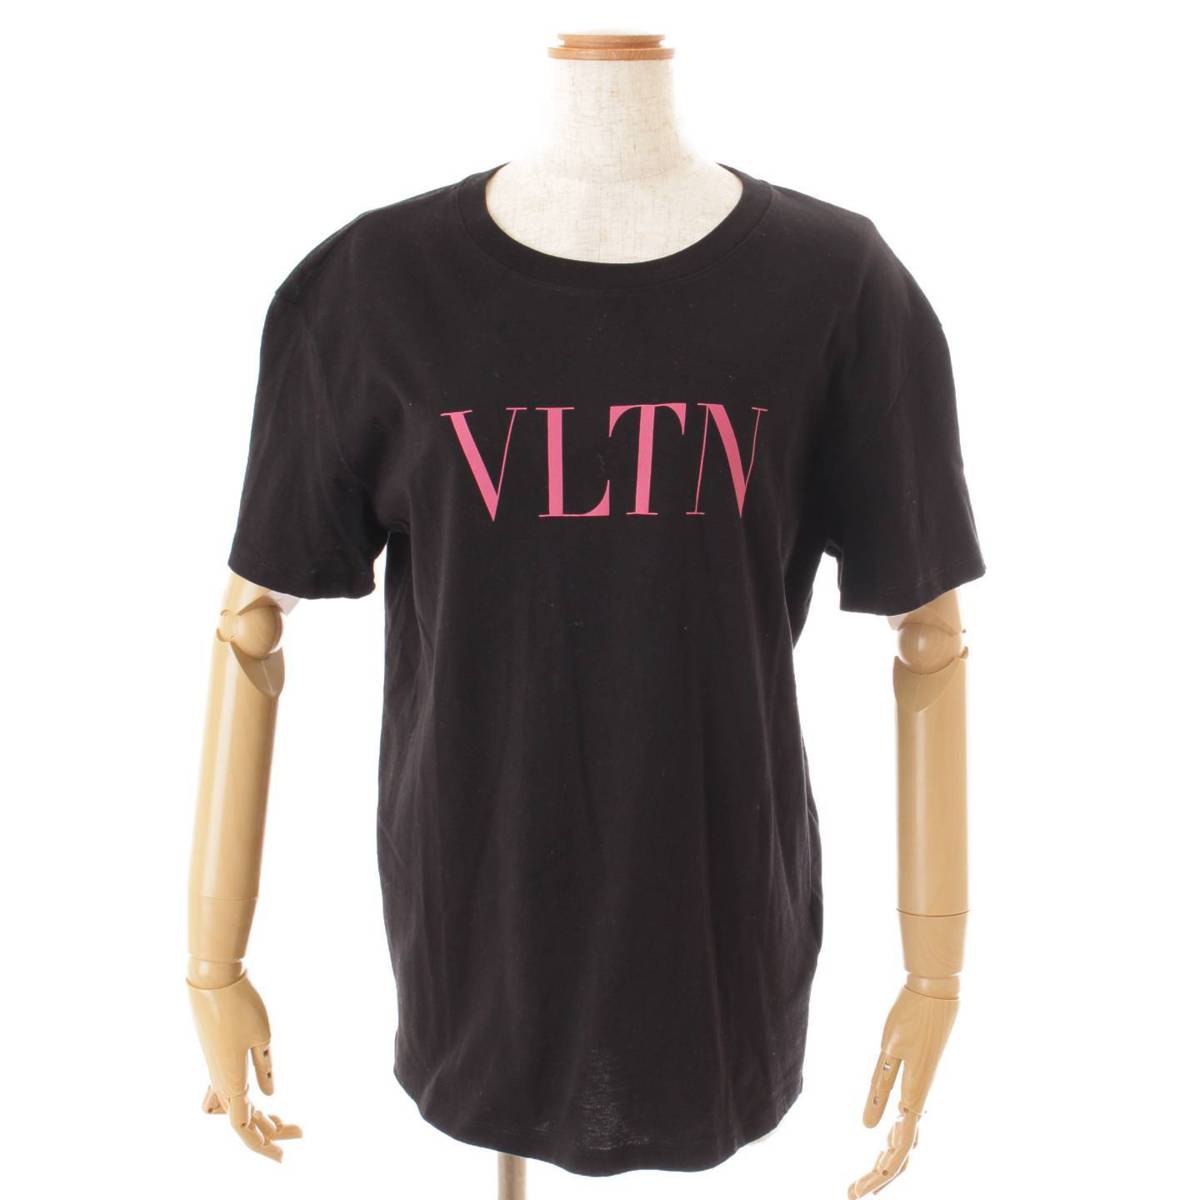 ヴァレンティノ(Valentino) カットソー VLTN ロゴ Tシャツ ブラック XS